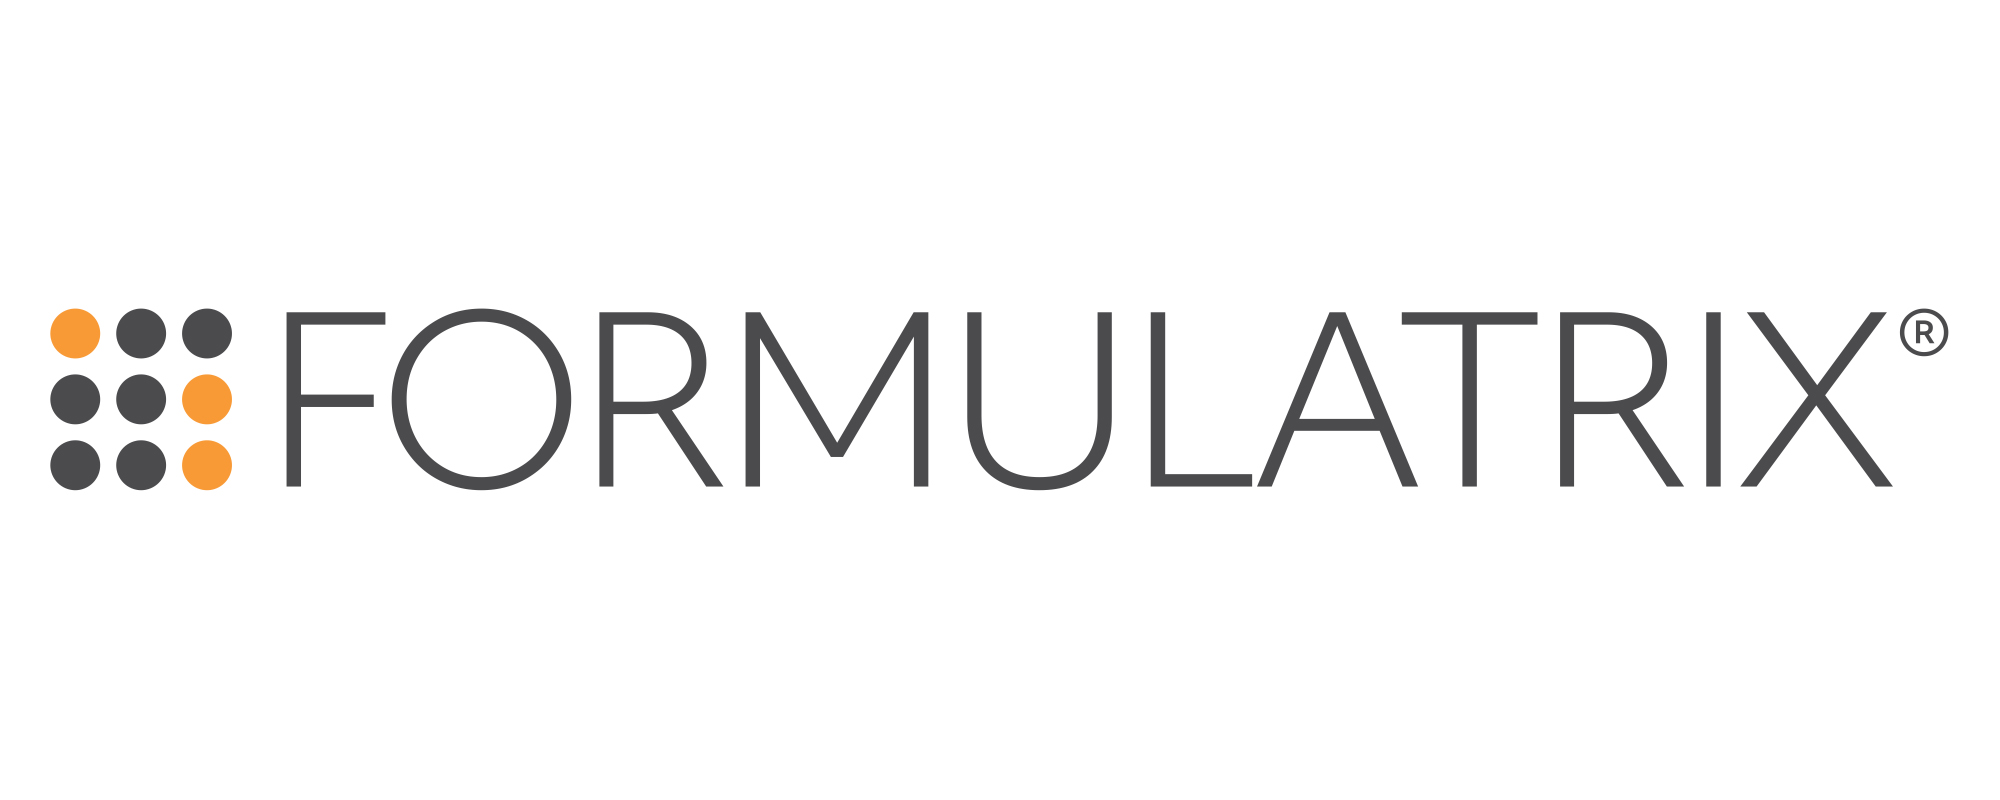 Formulatrix®如何提供实验室自动化?